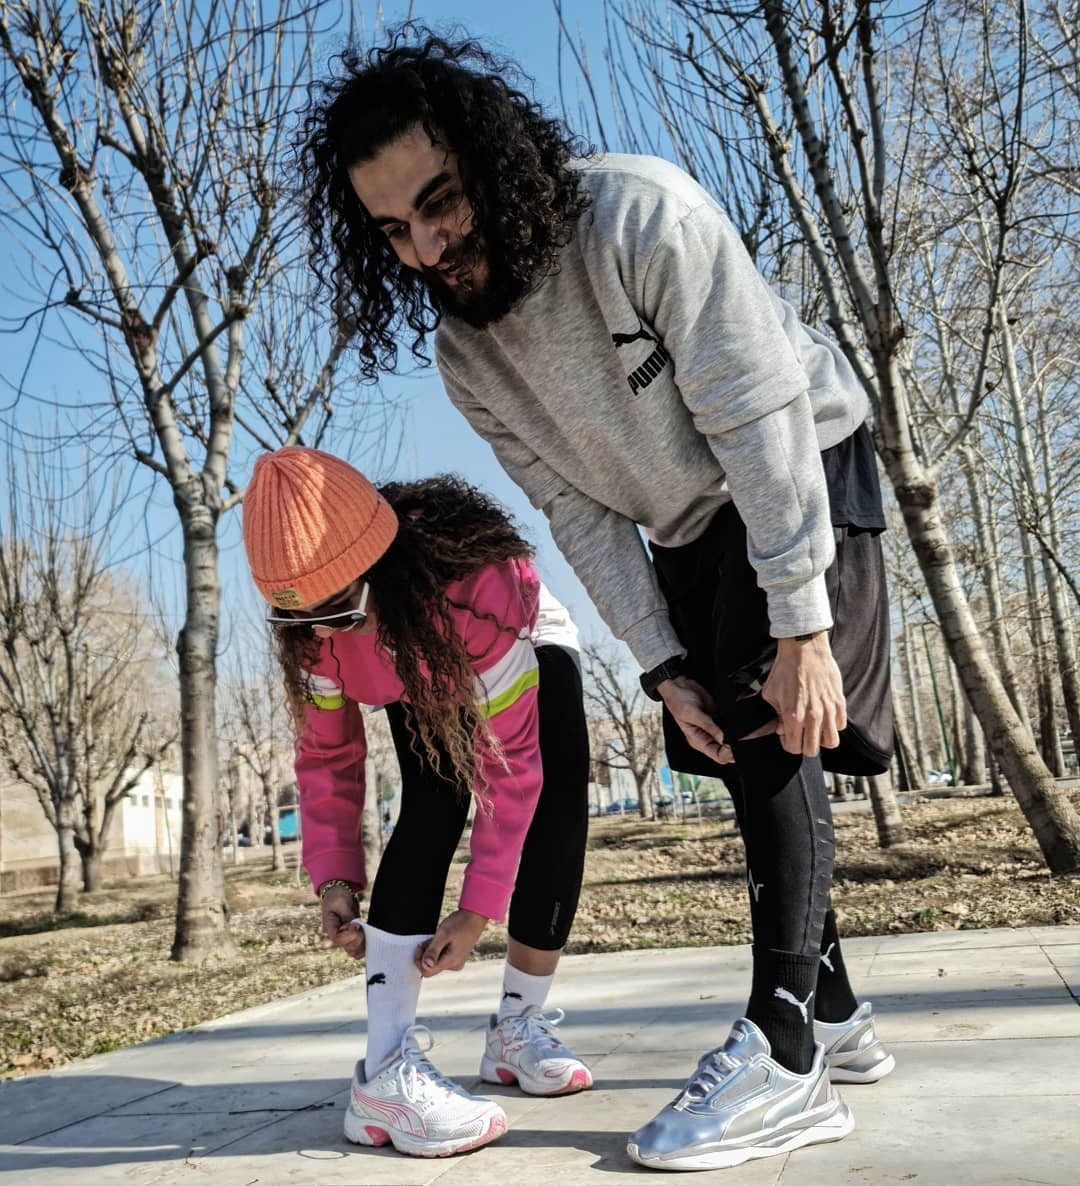 Vater und Tochter in PUMA Laufbekleidung bei Pause während des Lauftrainings im Freien